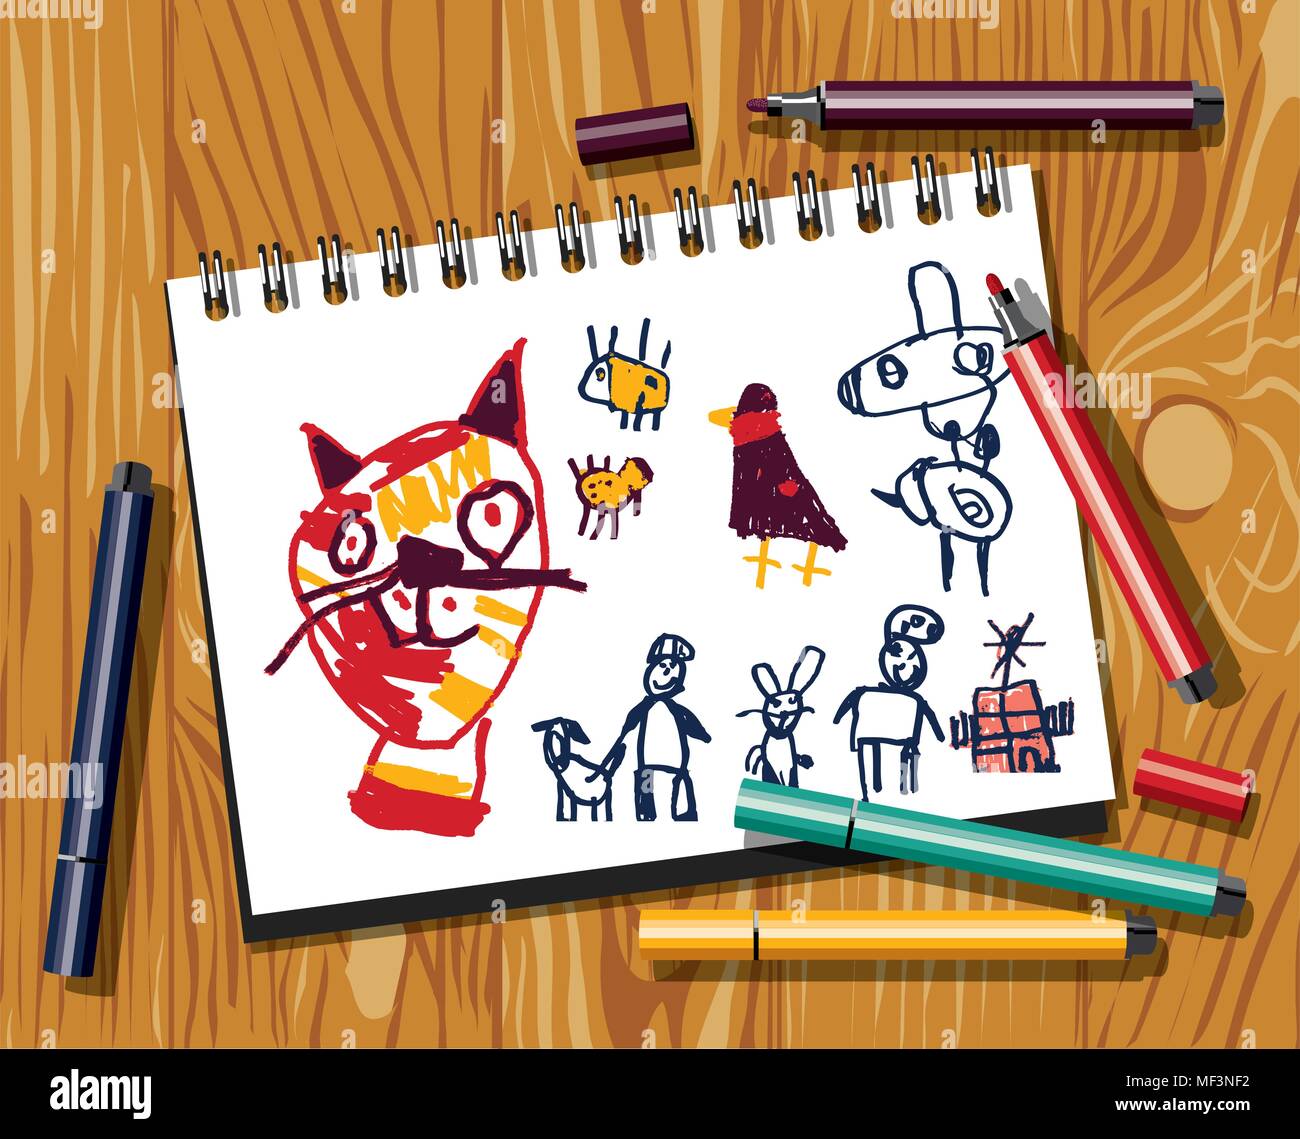 Kinder doodles zeichnen Katze Filzstift Papier und Holz Hintergrund. Das Bild ist von Erwachsenen gemacht, imitiert kindliche Zeichnung. Farbe Vector Illustration. EPS8 Stock Vektor